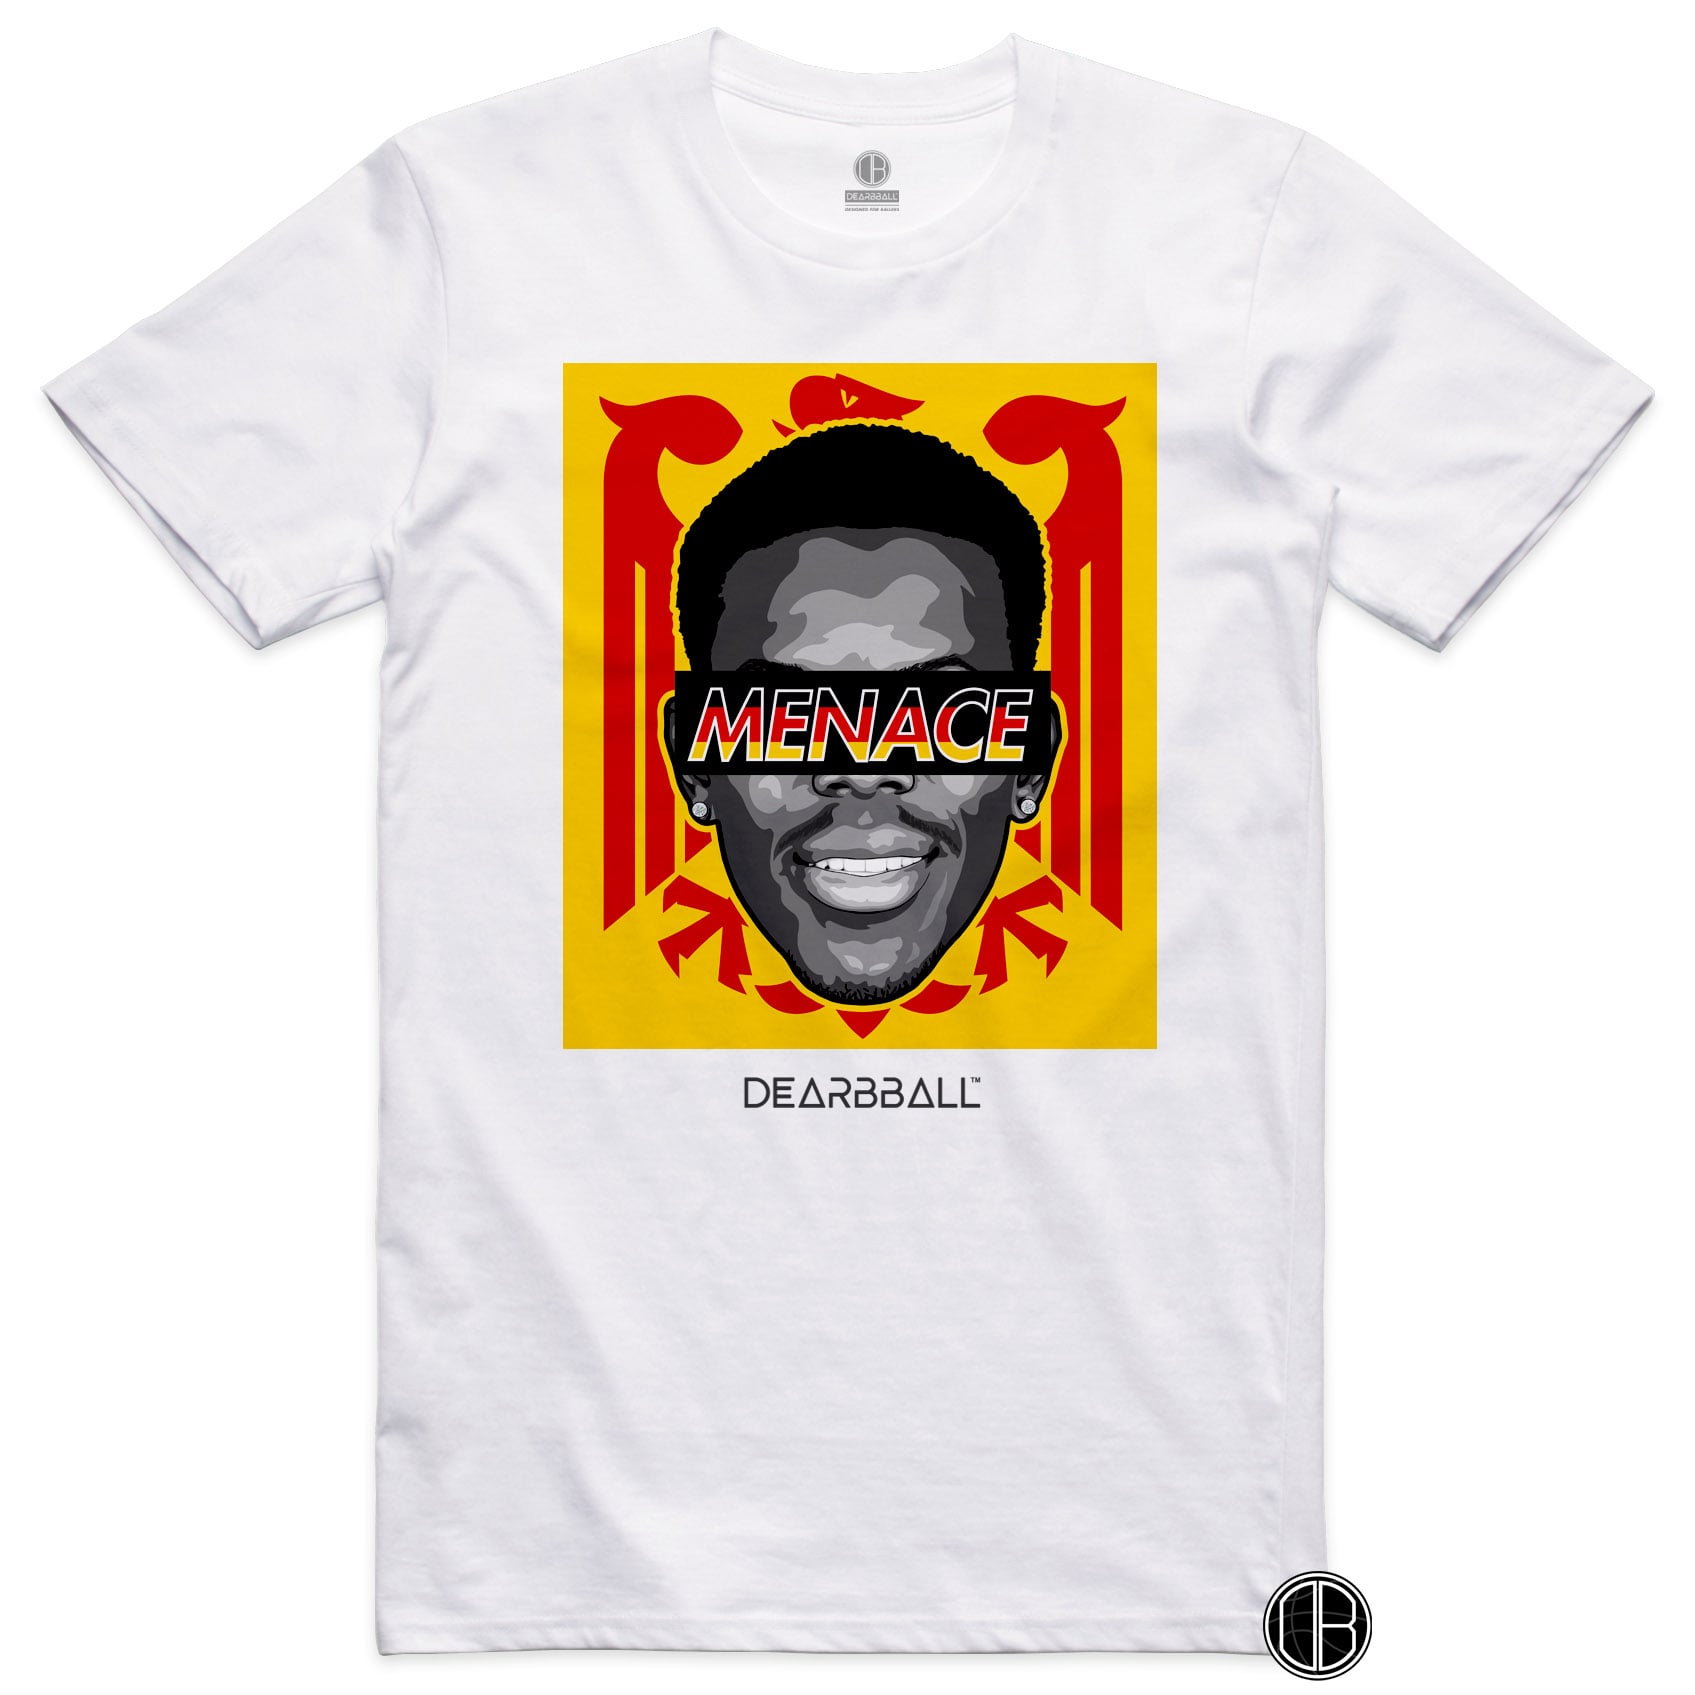 DearBBall T-Shirt - World MENACE Edition